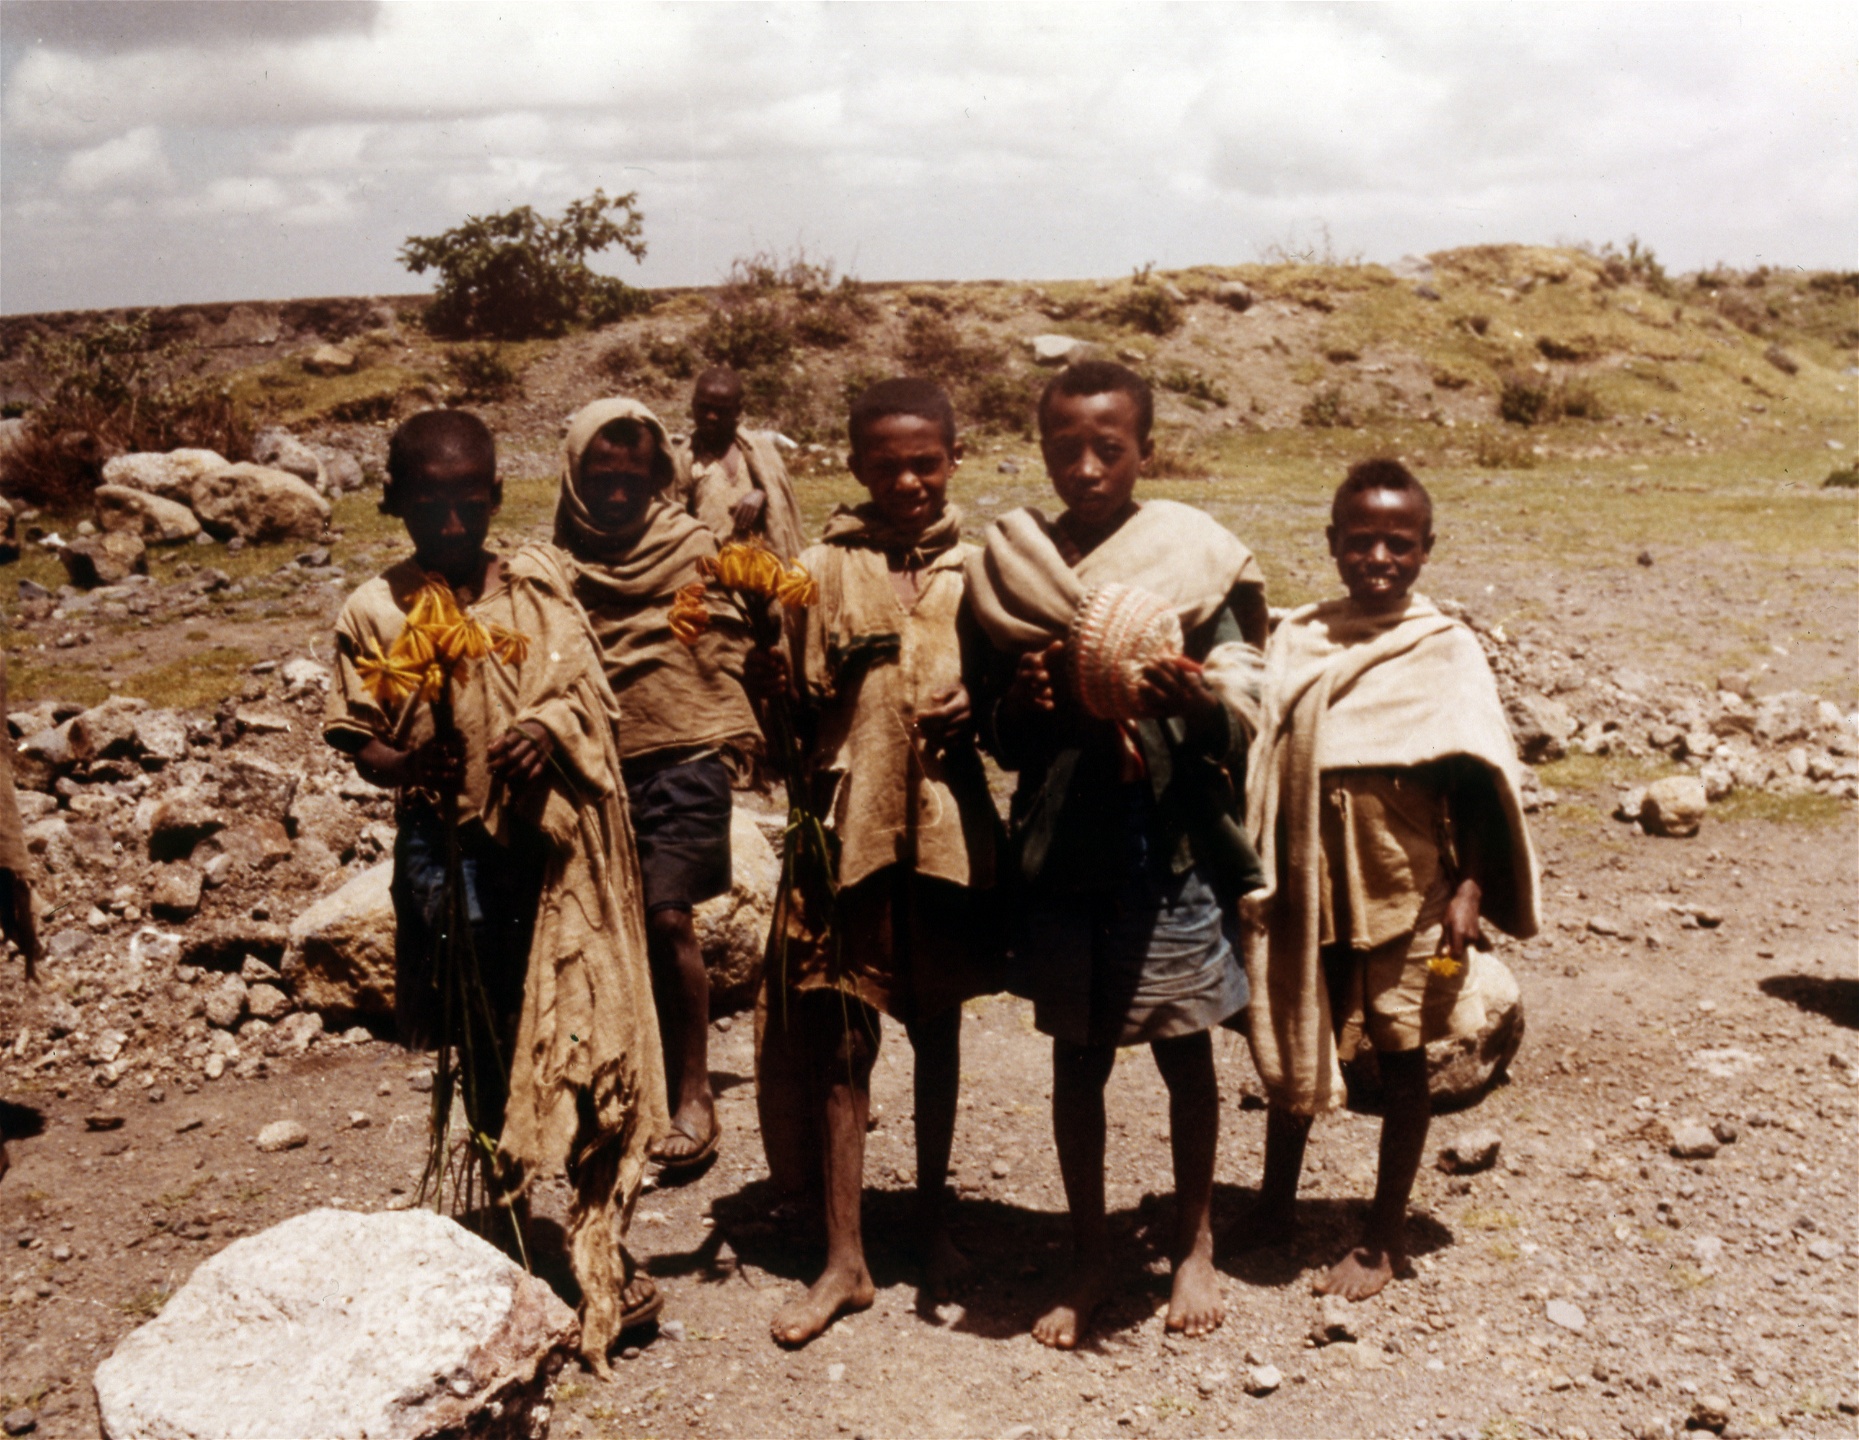 Bilden från 1974 visar barn från Bana-stammen i norra Etiopien som säljer souvenirhattar och exotiska blommor till besökare i området.